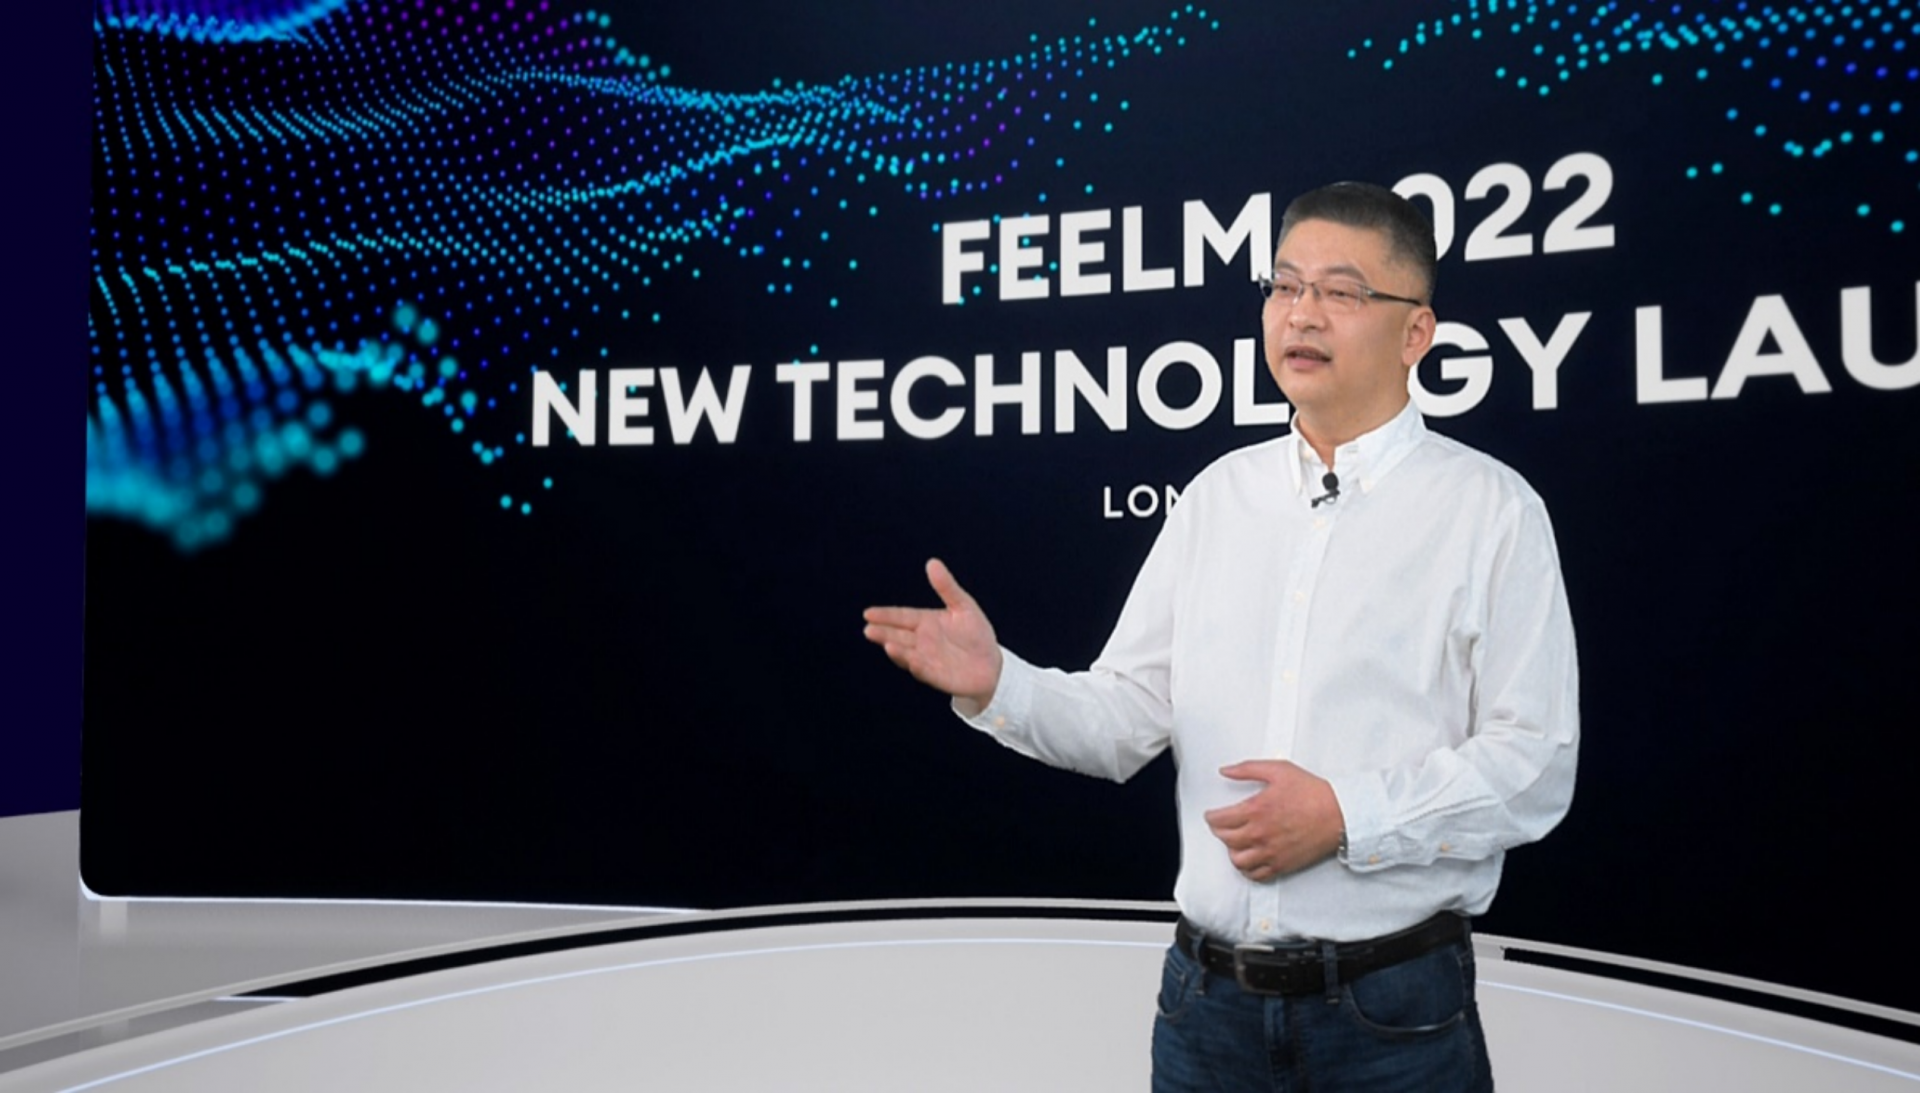 深圳企业思摩尔在英发布全新一代超薄电子雾化解决方案FEELM Air，三大创新七大突破引领行业超薄化变革